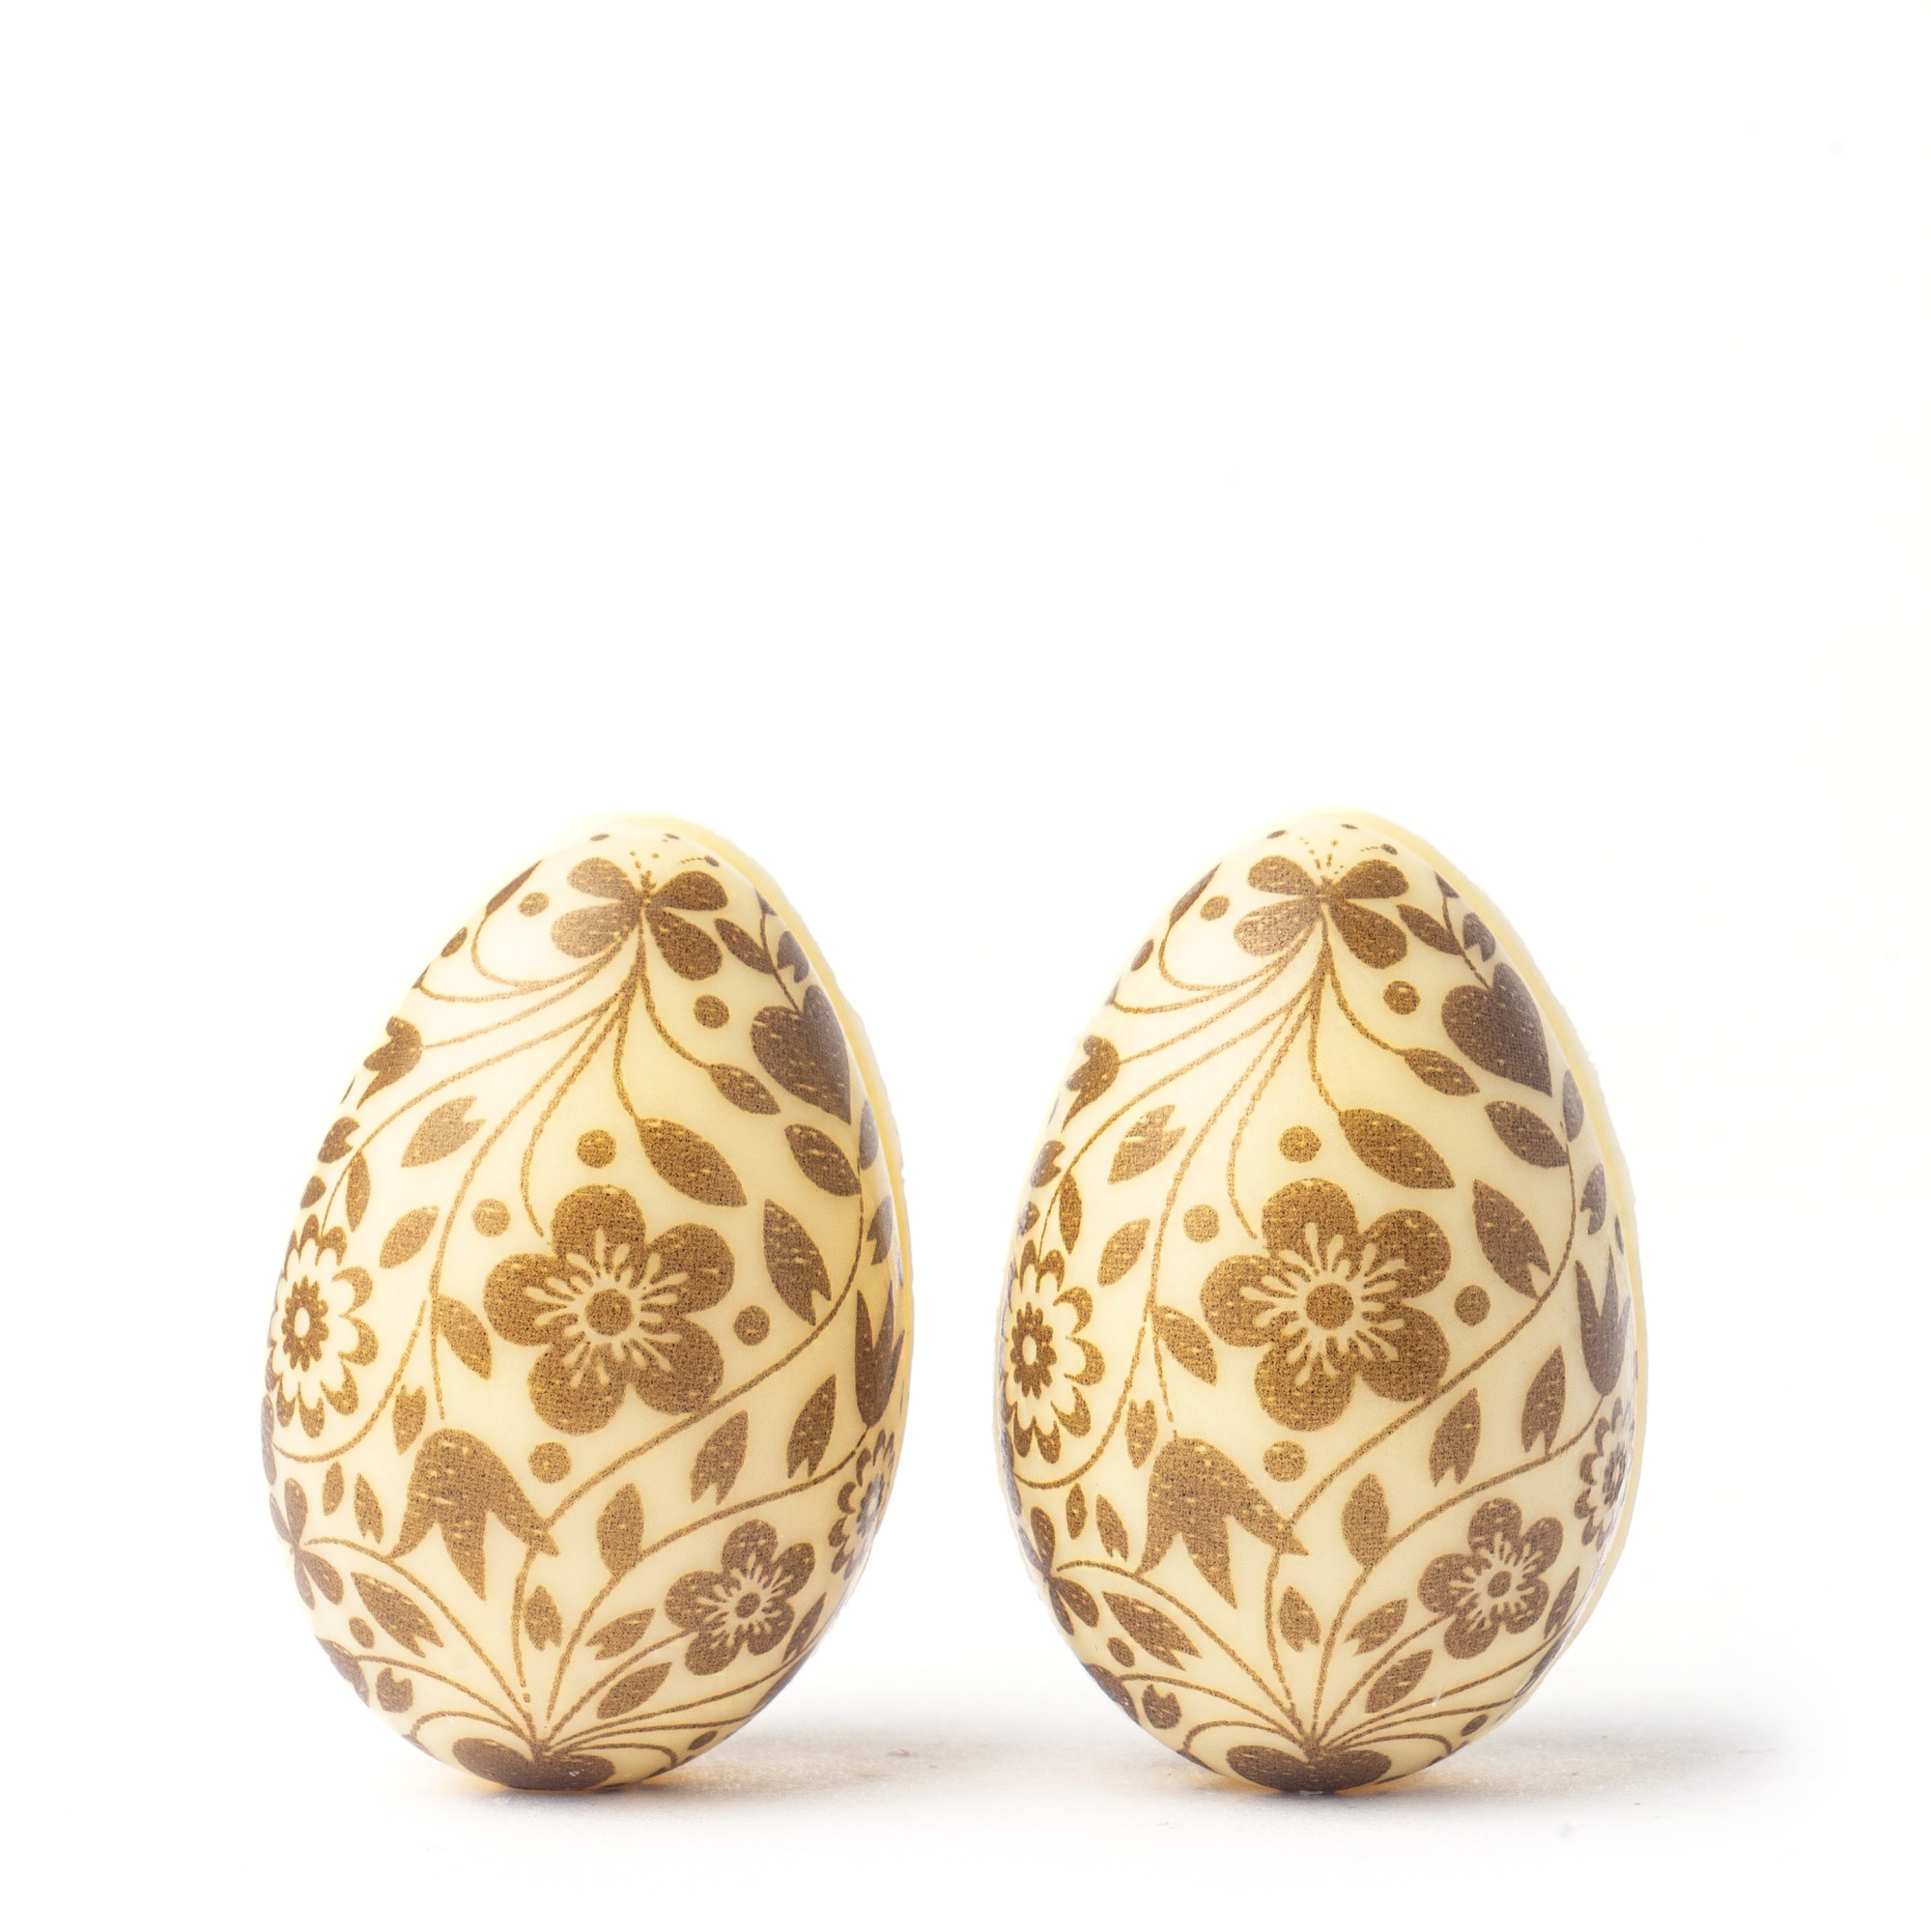 Яйца шоколадные 3D «Цветочная роспись» бежевые 4х2,7 см, PCB Creation, Франция,  2 шт.  | Фото — Магазин Andy Chef  1